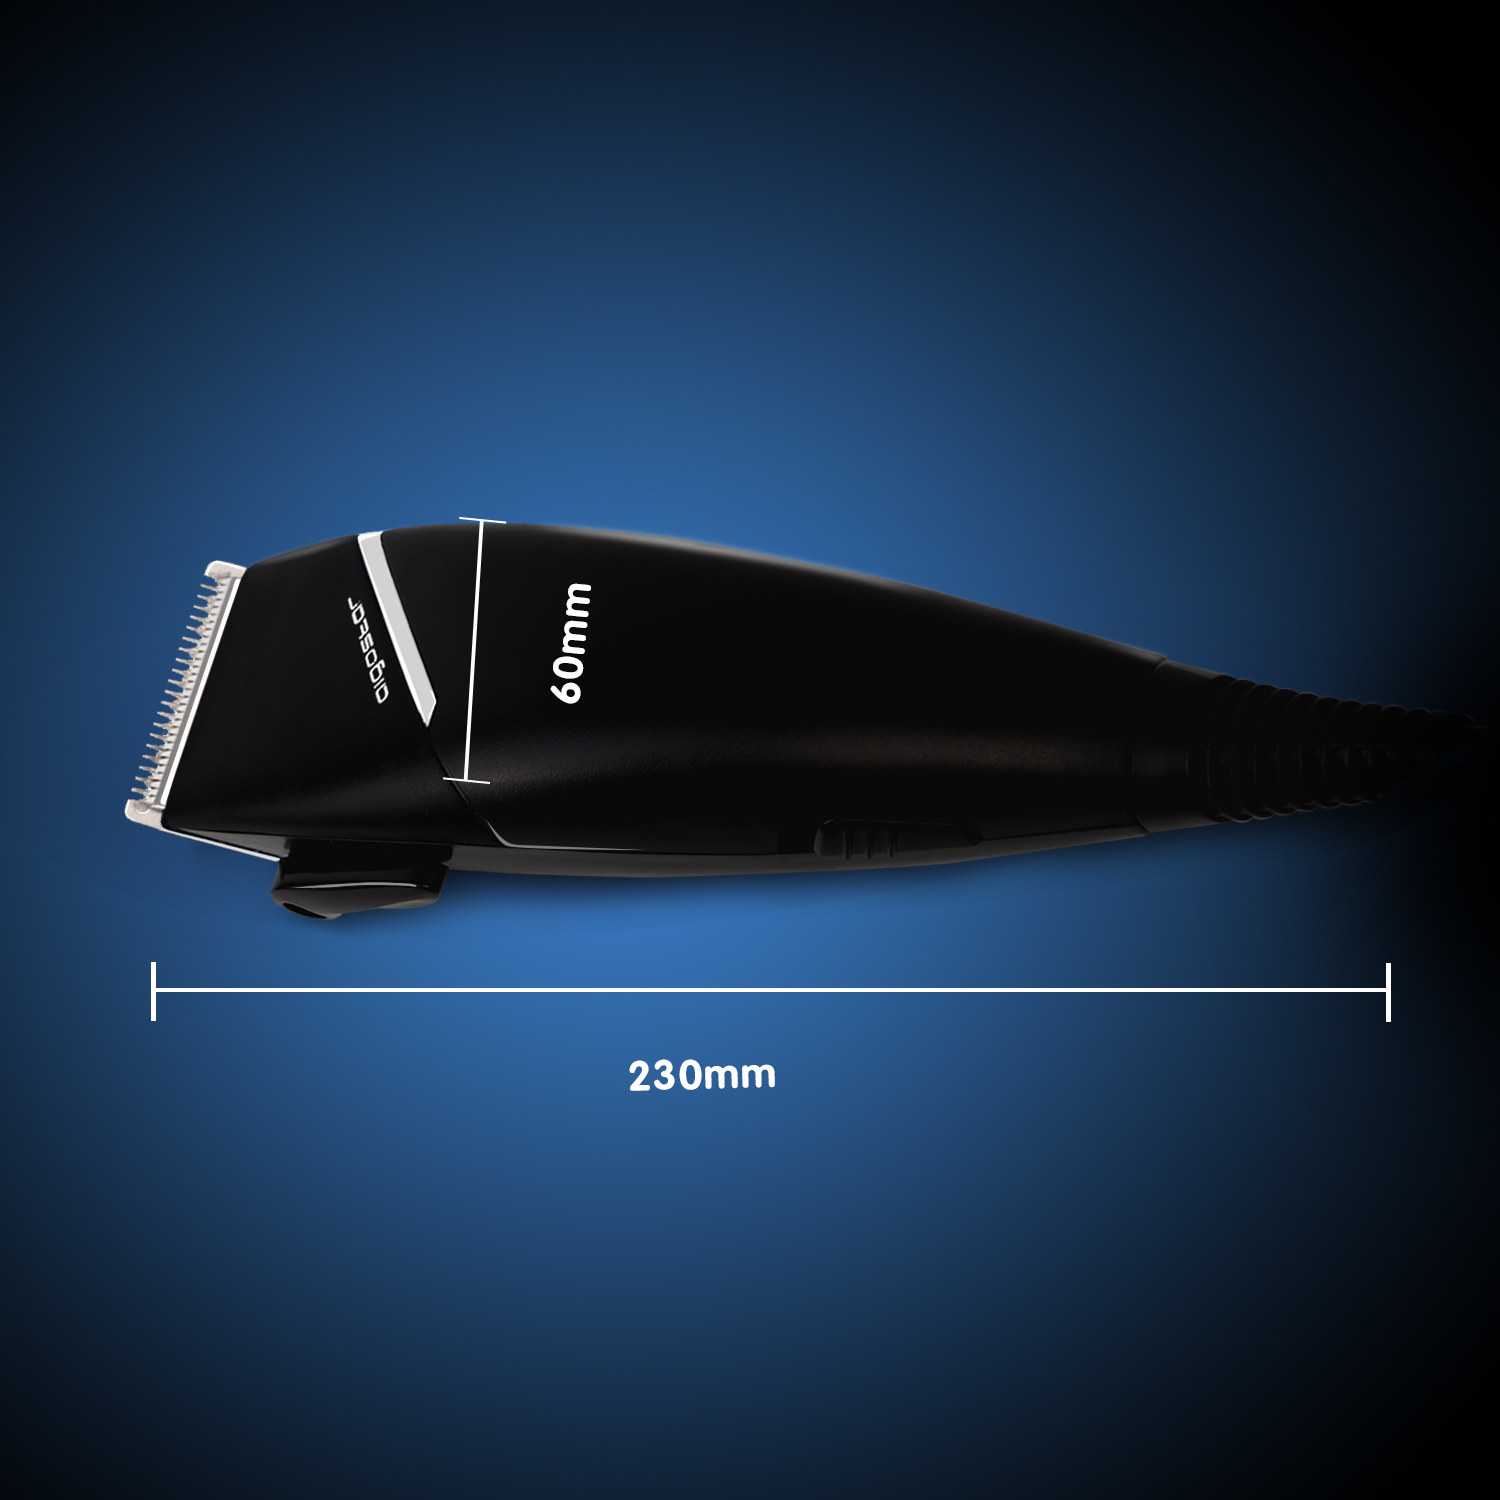 Aigostar MR. Black 32JVO - Maquinilla para cortar el pelo, 15 W potencia, 3 ajustes, incluye un kit completo de mantenimiento y 4 peines-guía, cable extra largo 1,65 m. Color negro. Diseño exclusivo.